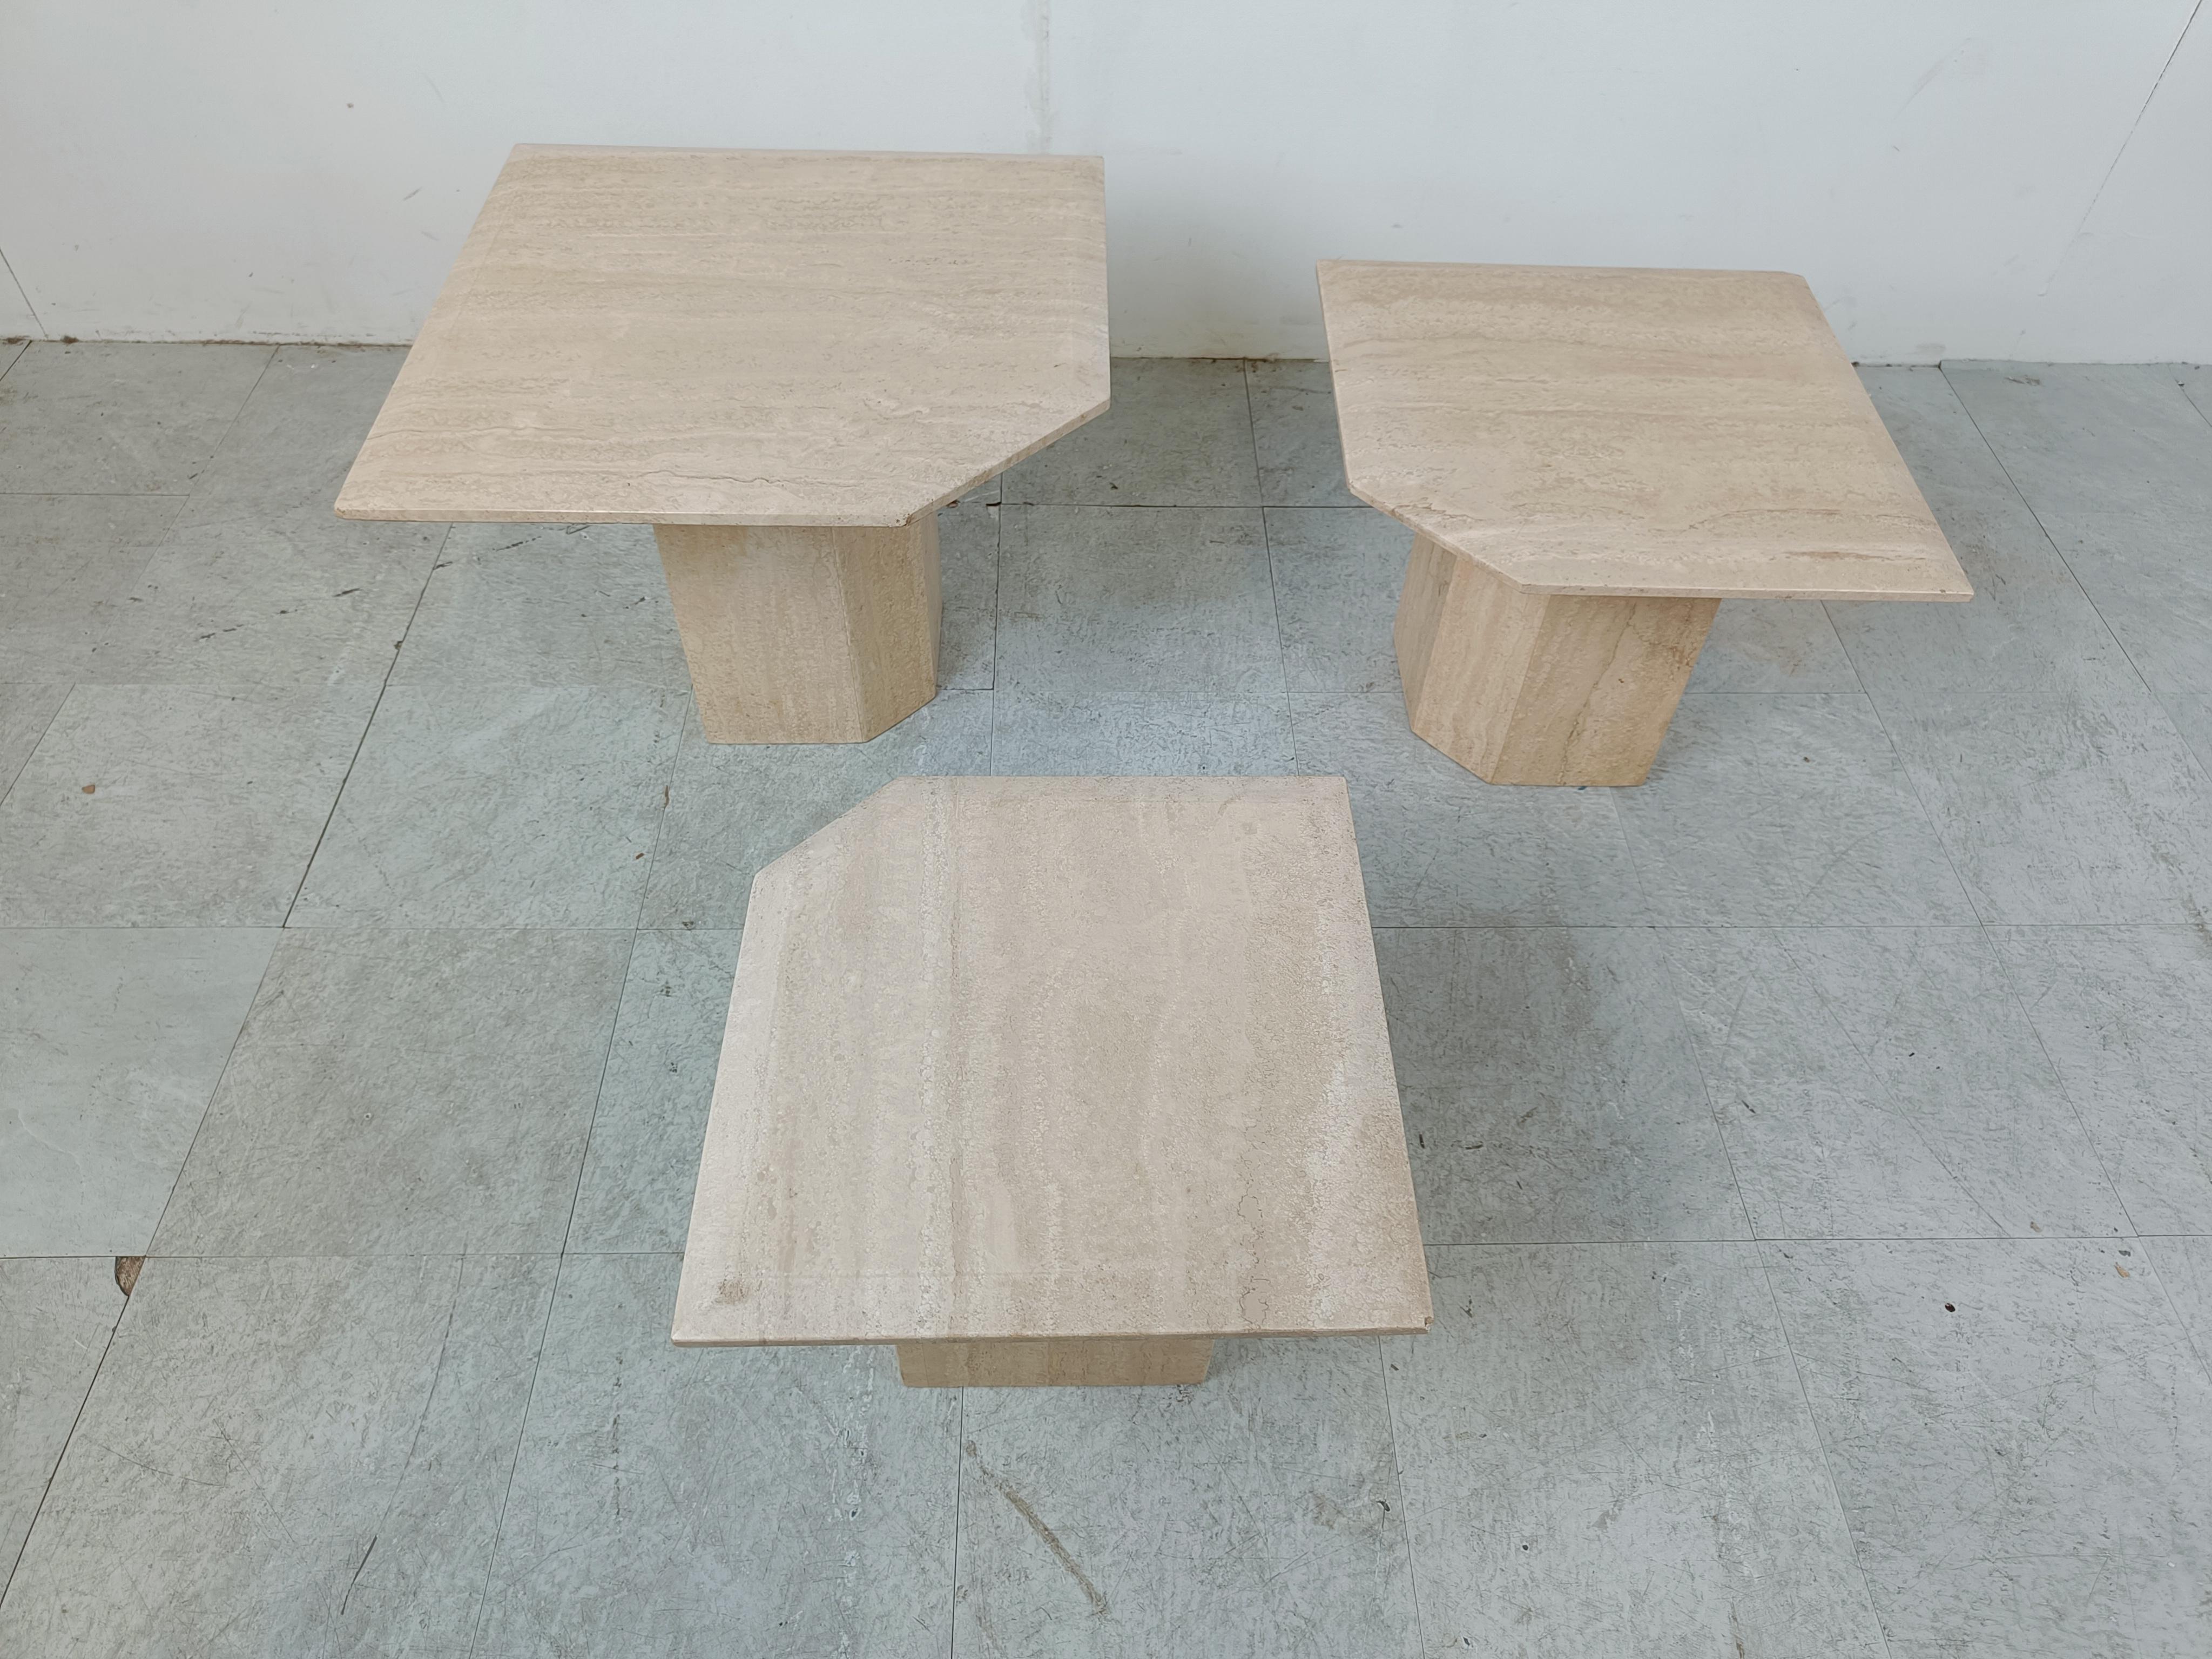 Satz italienischer Travertin-Stein-Nesting-Tische oder Beistelltische aus den 1970er Jahren.

Die Tische können in verschiedenen Zusammenstellungen aufgestellt werden. Zeitlose Gegenstände.

Schöne Farbe.

Sehr guter Zustand

1970er Jahre -